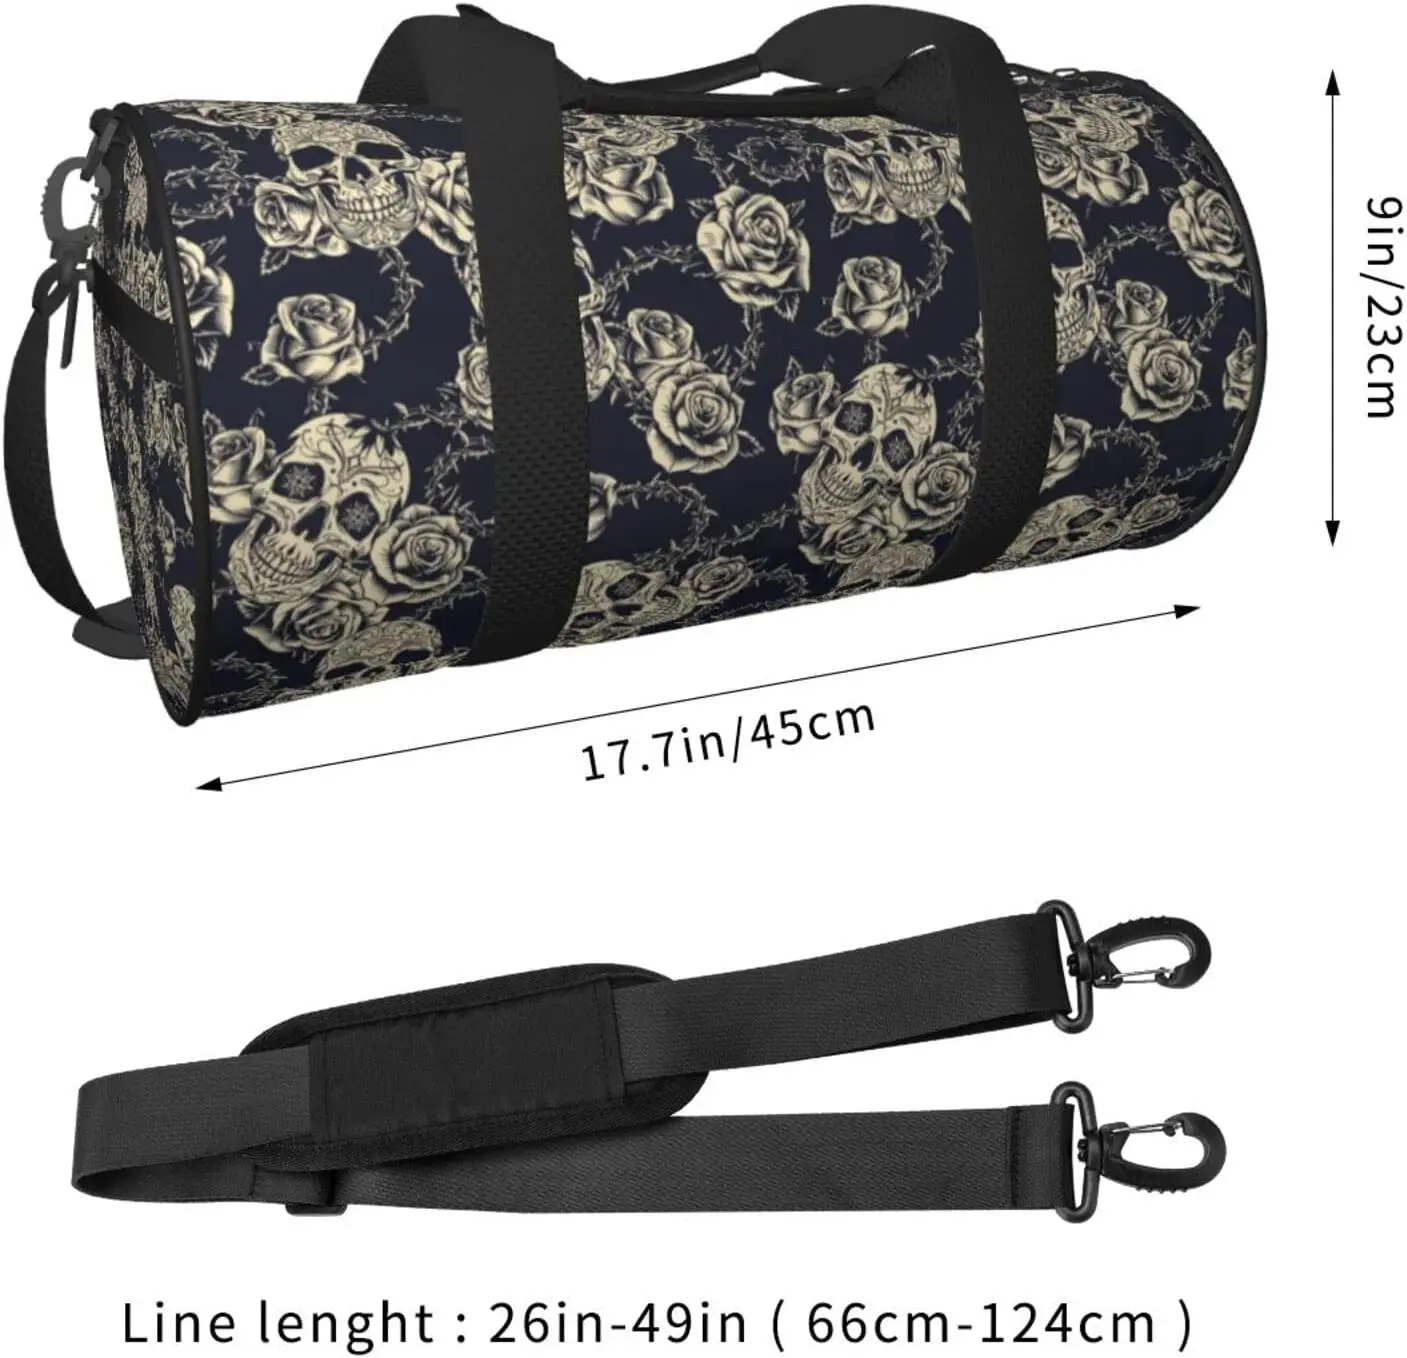 Vintage Rose Flower Duffel Bag for Traveling Large Sports Gym Bag